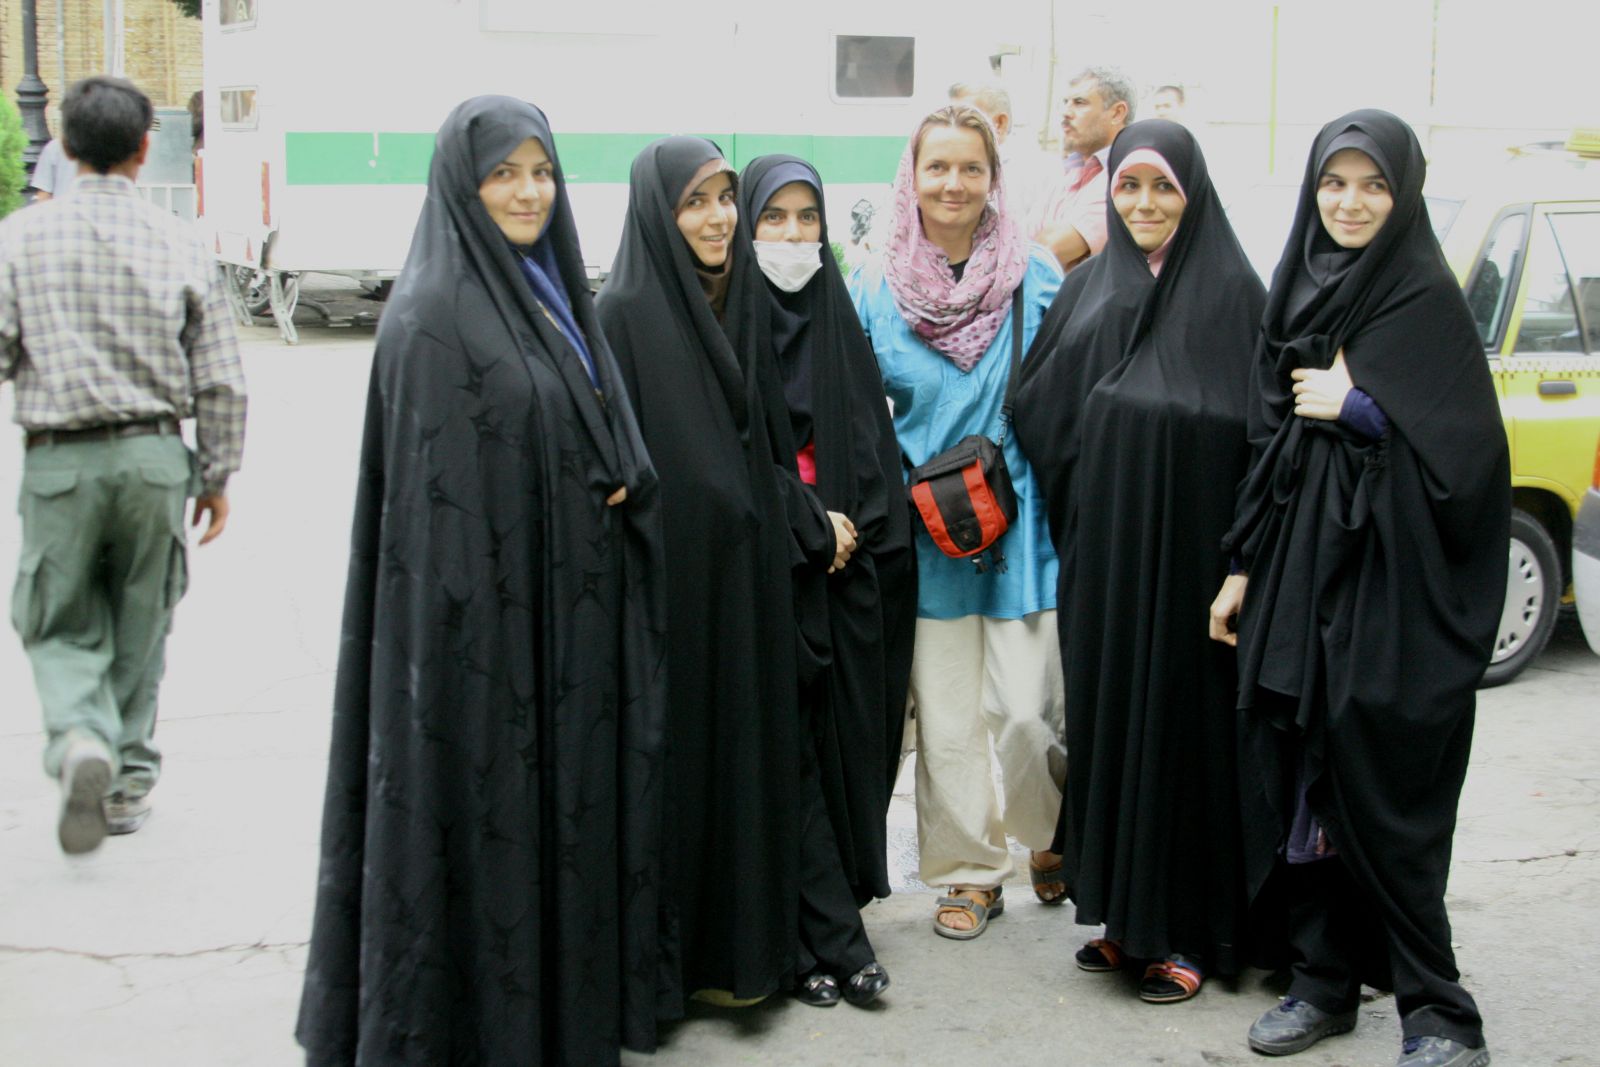 A csadornak különféle változatai és sajátos kultúrája valamint története van. Iránban nem a csador viselése a kötelező, hanem az iszlám öltözködési előírás betartása valamilyen formában. 
